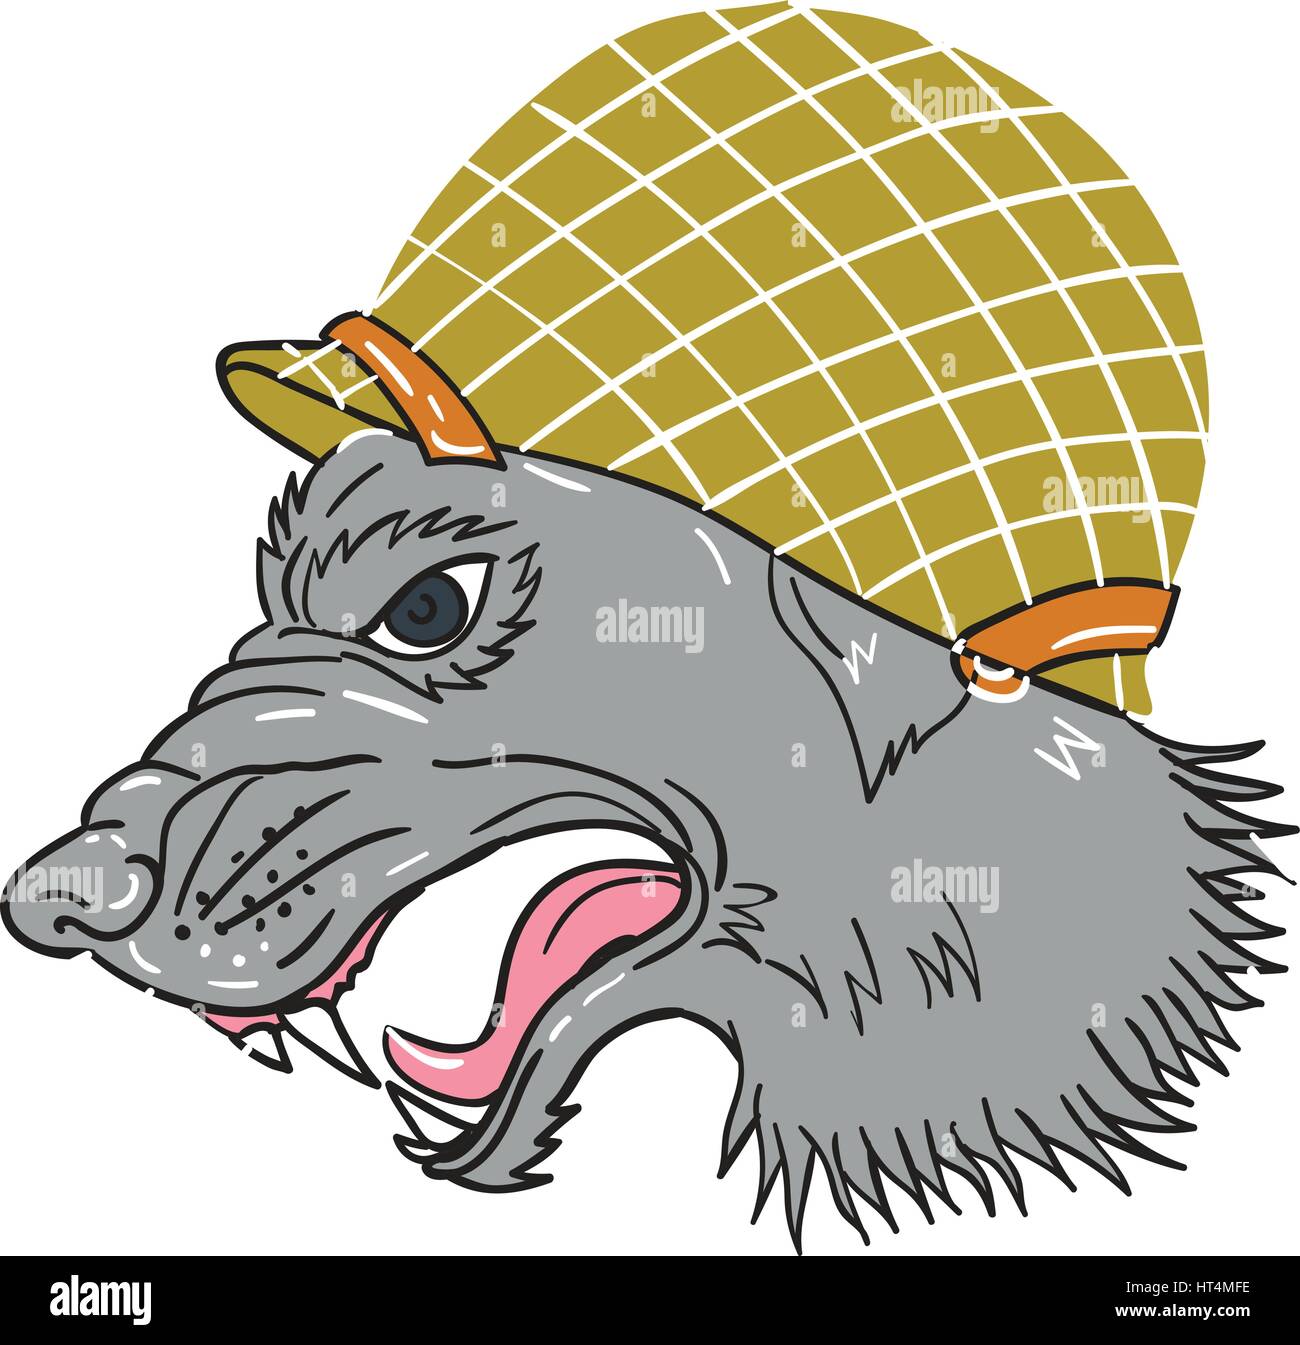 Croquis dessin illustration style de tête de loup gris portant des casques de la deuxième guerre mondiale gronde depuis le côté isolé sur fond blanc. Illustration de Vecteur